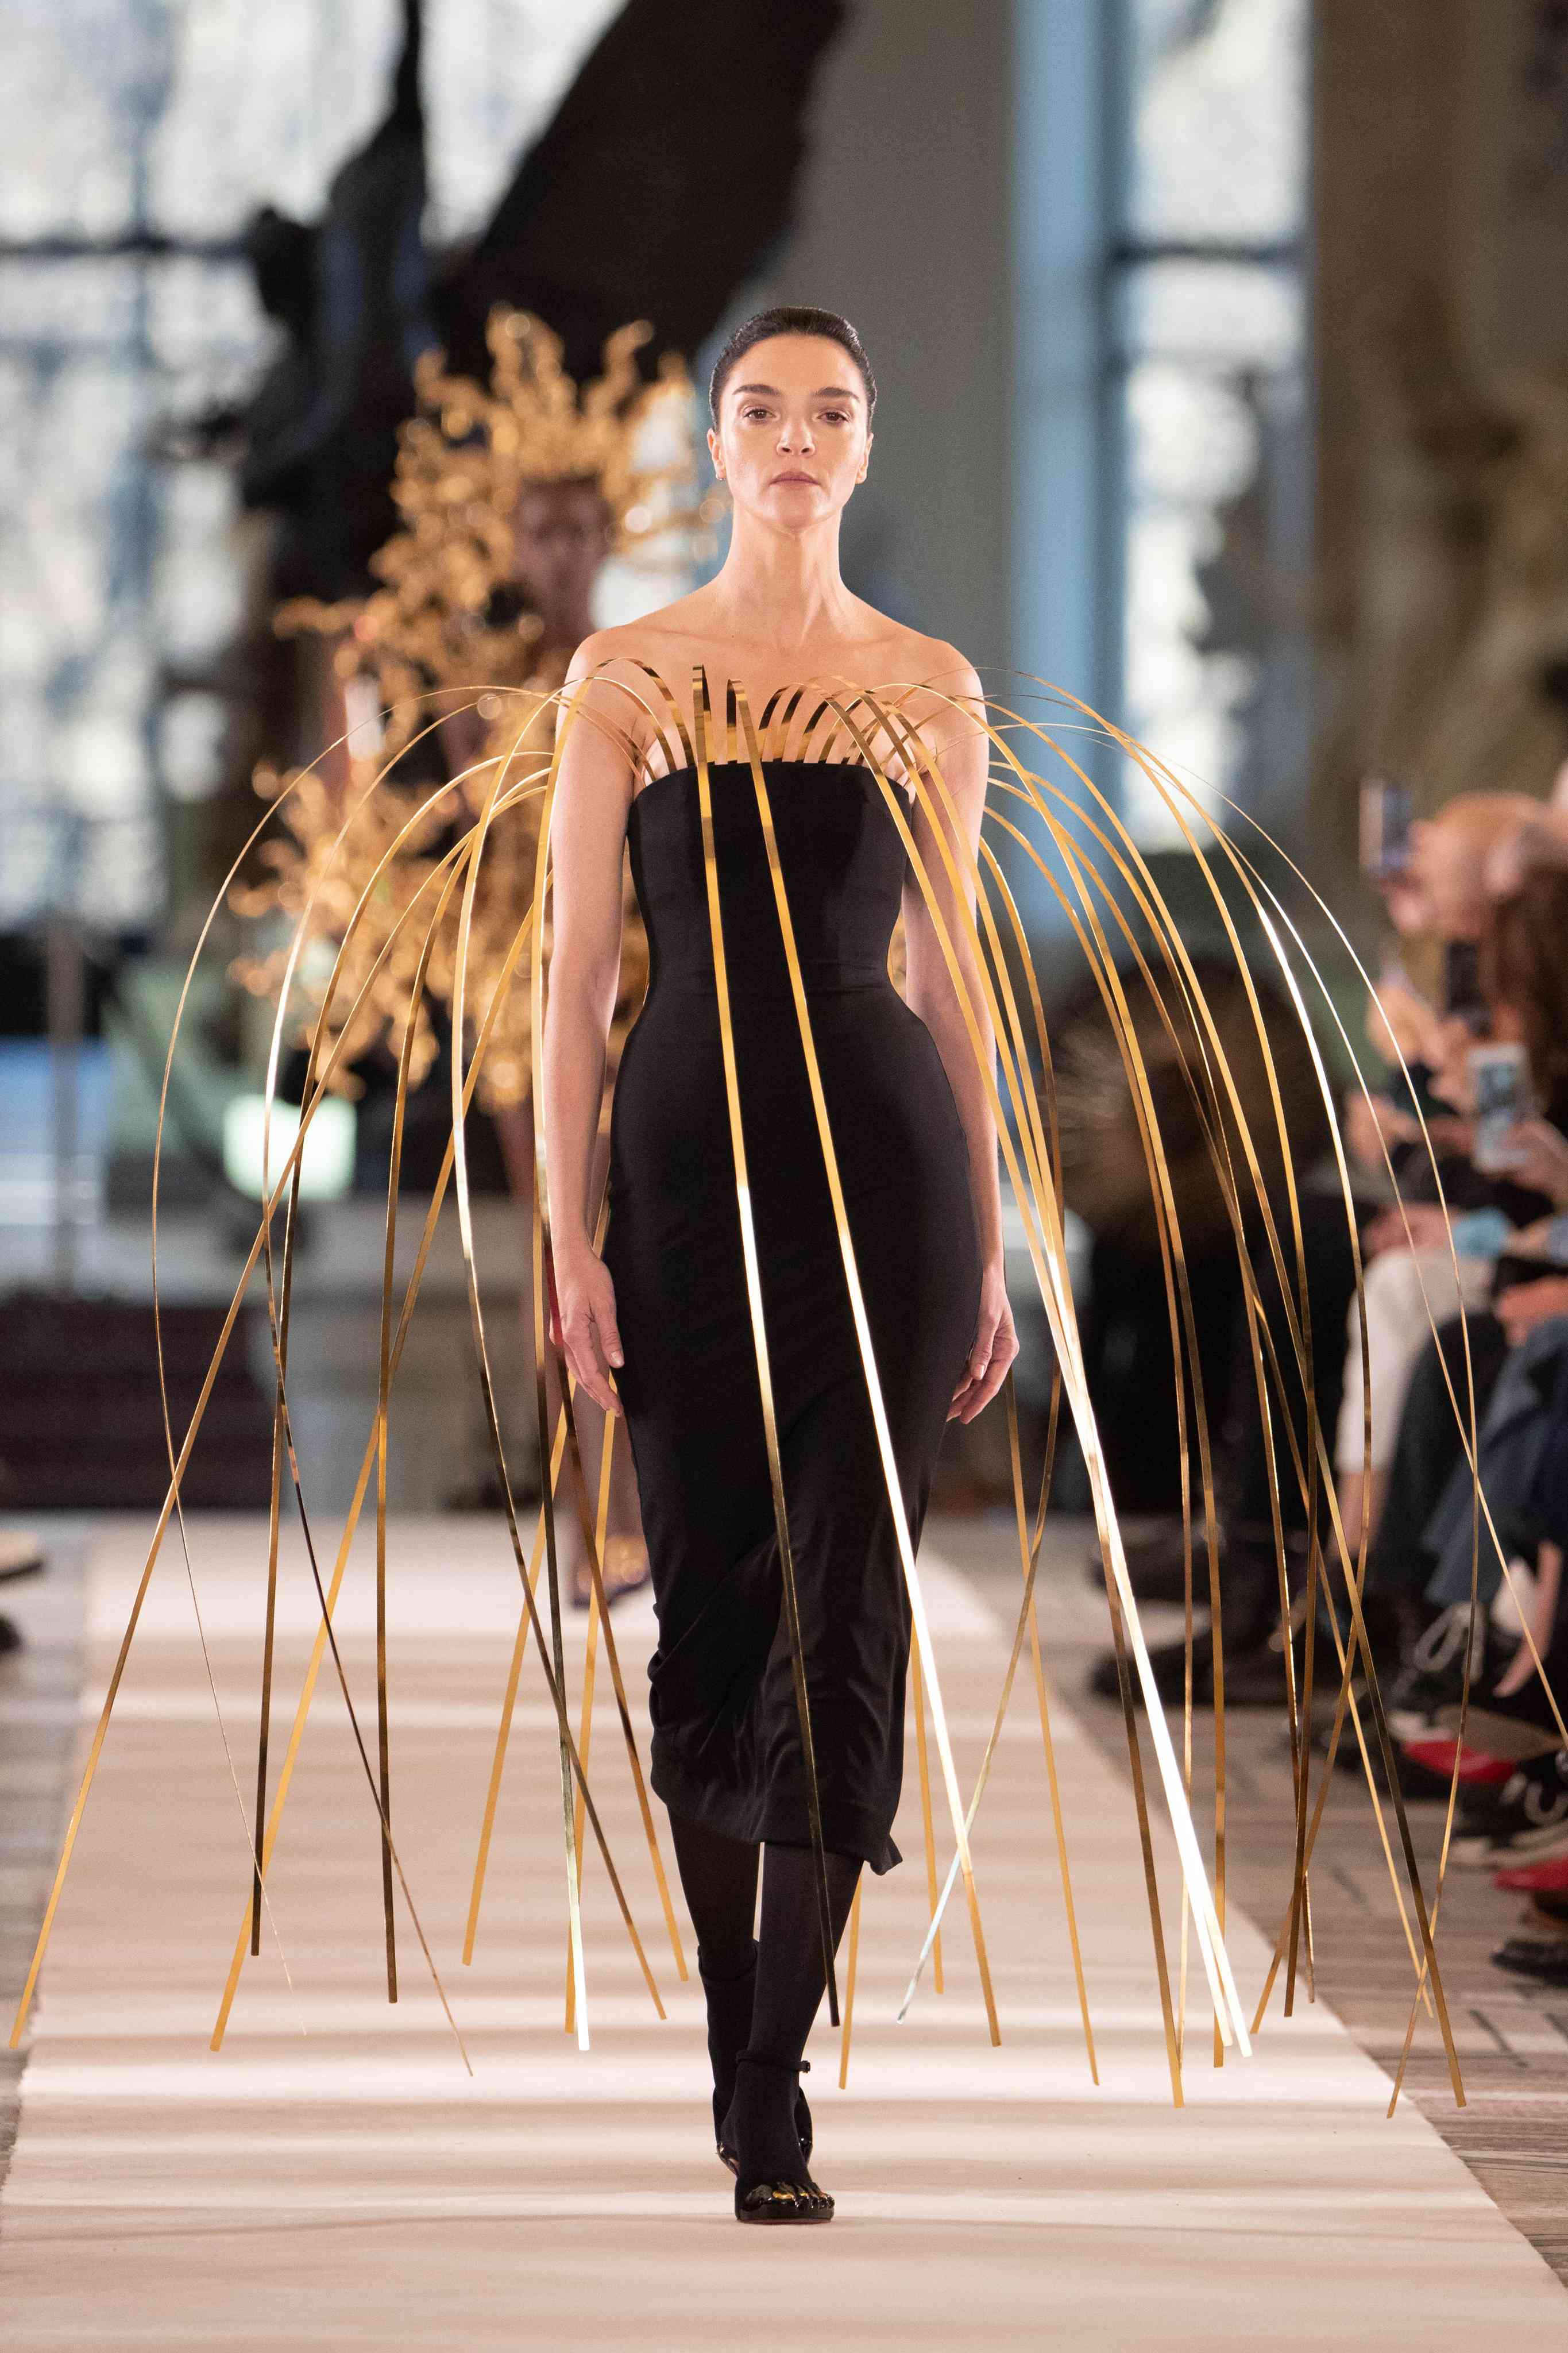 Paris Fashion Week: Schiaparelli Spring/Summer 2022 Haute Couture - A&E